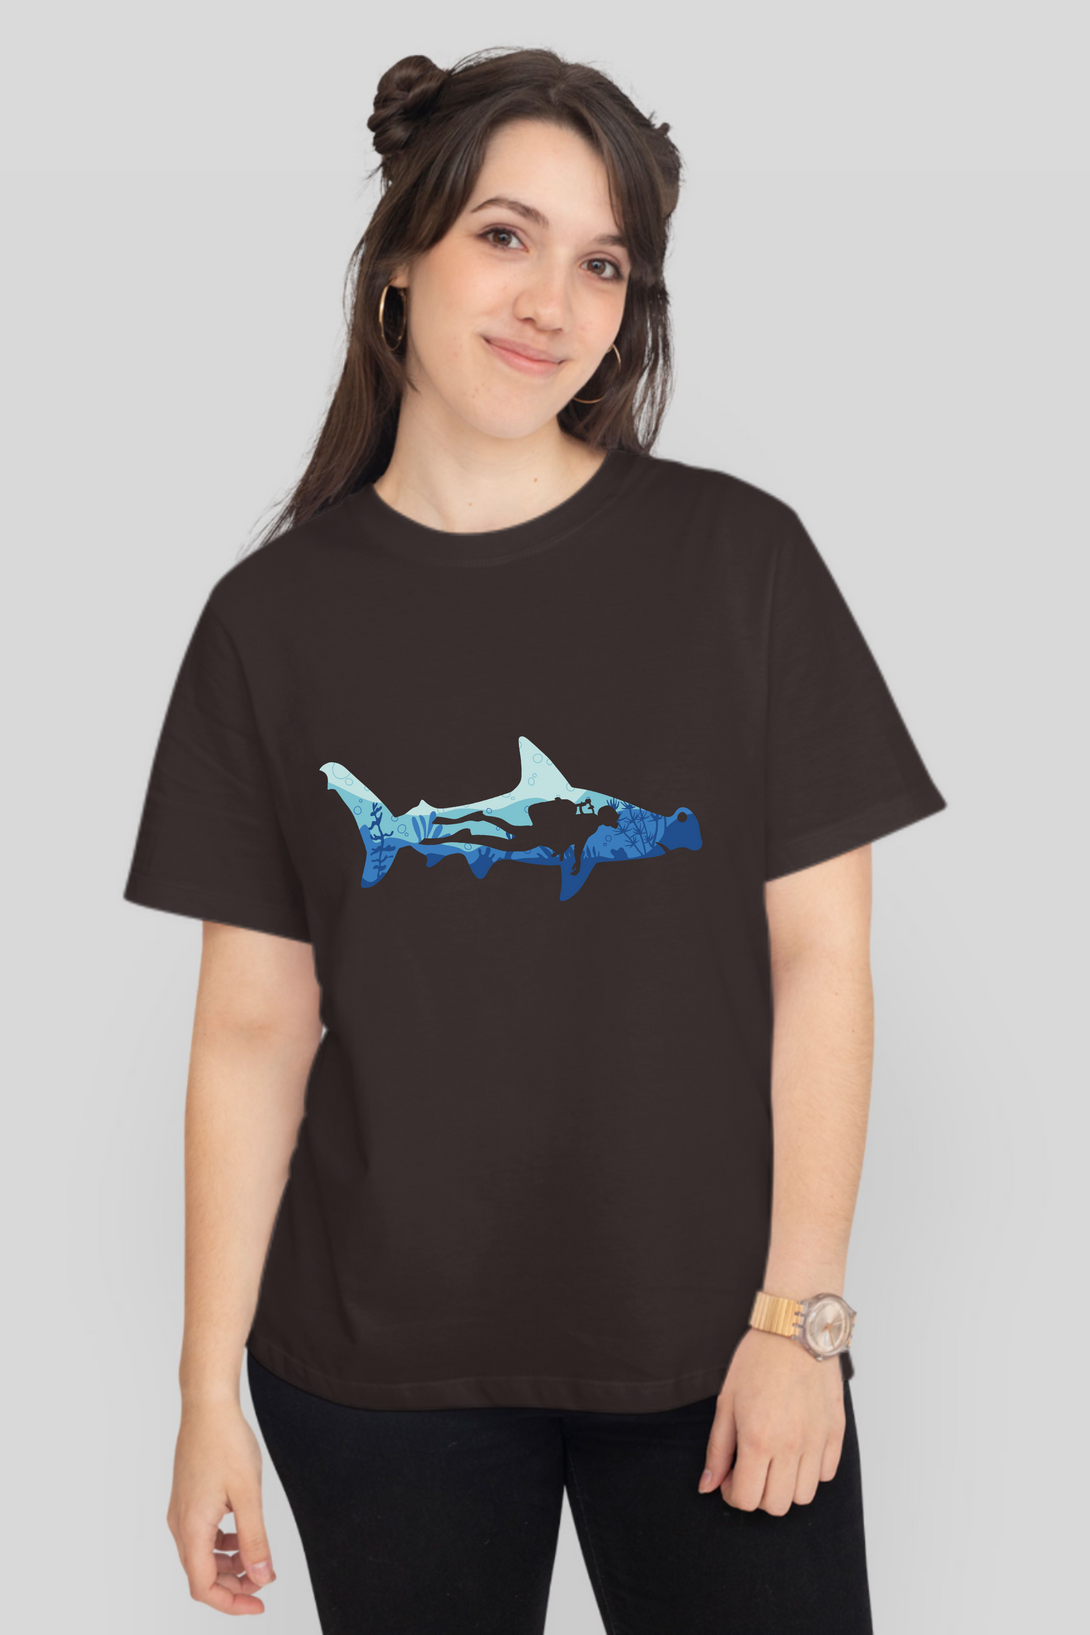 Hammerhead Shark Dive Printed T-Shirt For Women - WowWaves - 11